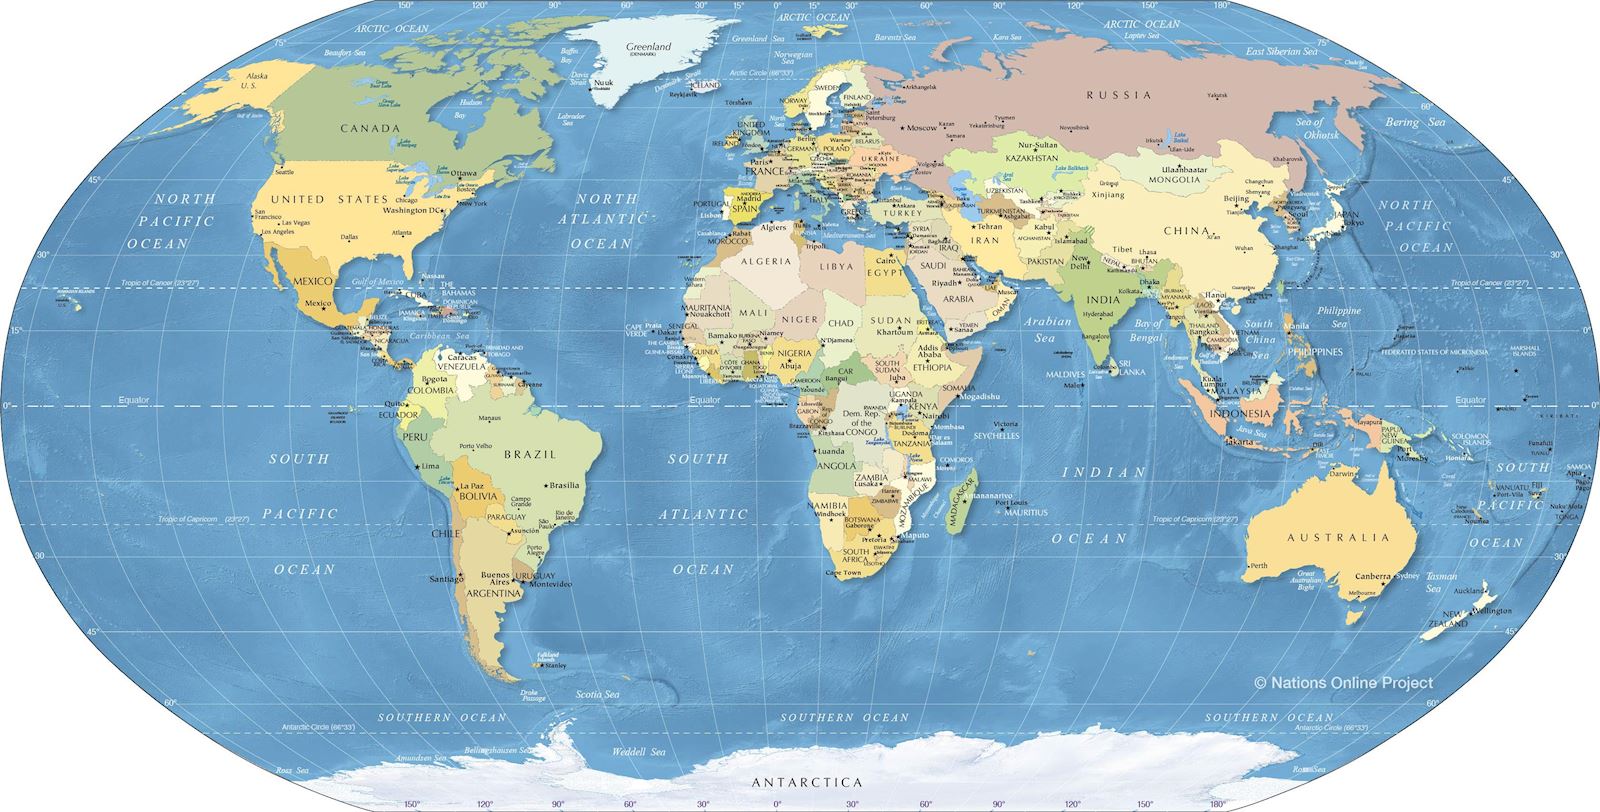 Nâng cao kiến thức và cảm hứng cho hành trình của bạn với bản đồ thế giới phóng to. Với chi tiết tinh tế về các quốc gia, địa hình và đặc điểm văn hóa, bạn sẽ có cái nhìn tổng quan về thế giới cùng với độ sắc nét và trung thực tuyệt vời. Nếu bạn yêu thích khám phá thế giới, chắc chắn đây là một trải nghiệm thú vị.